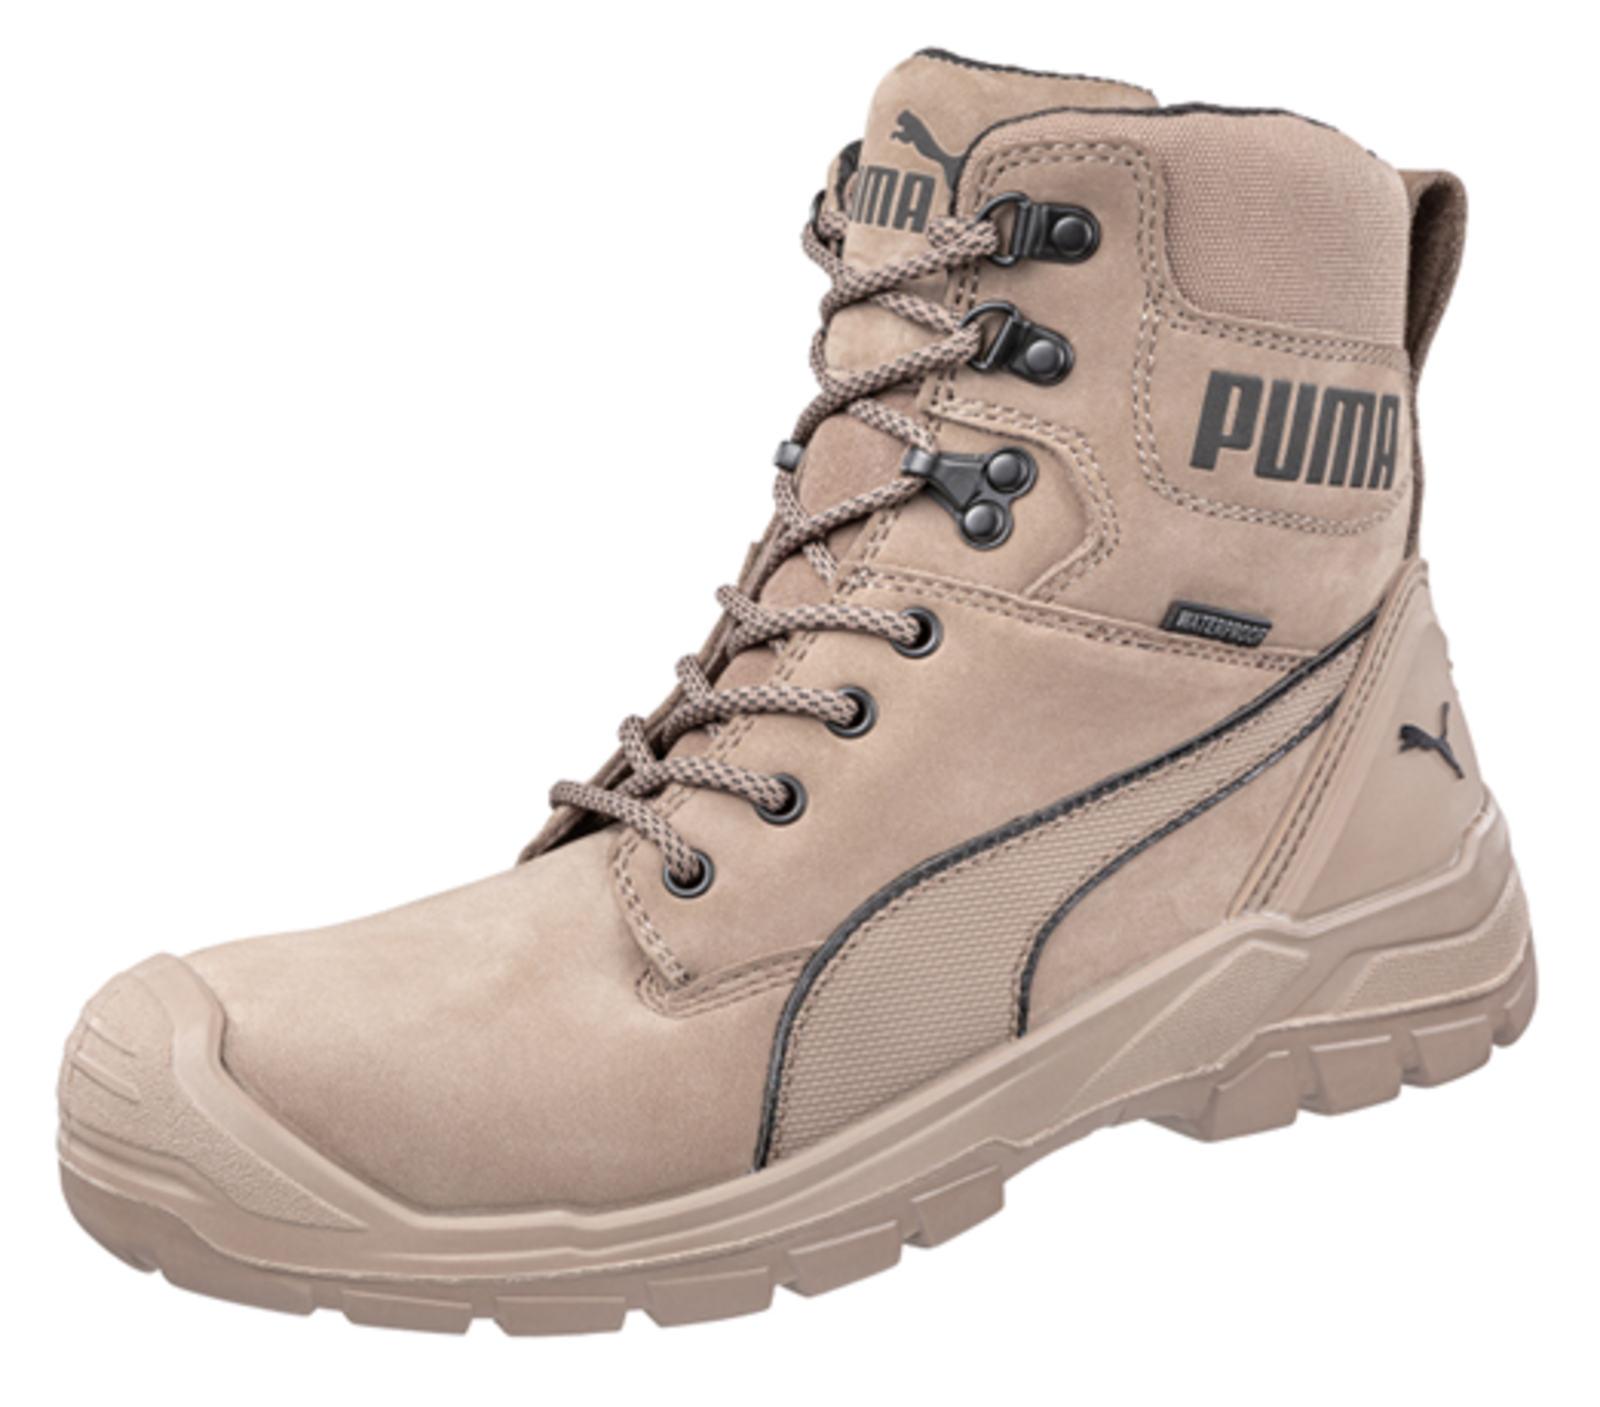 Bezpečnostná obuv Puma Conquest Stone S3 - veľkosť: 44, farba: svetlohnedá